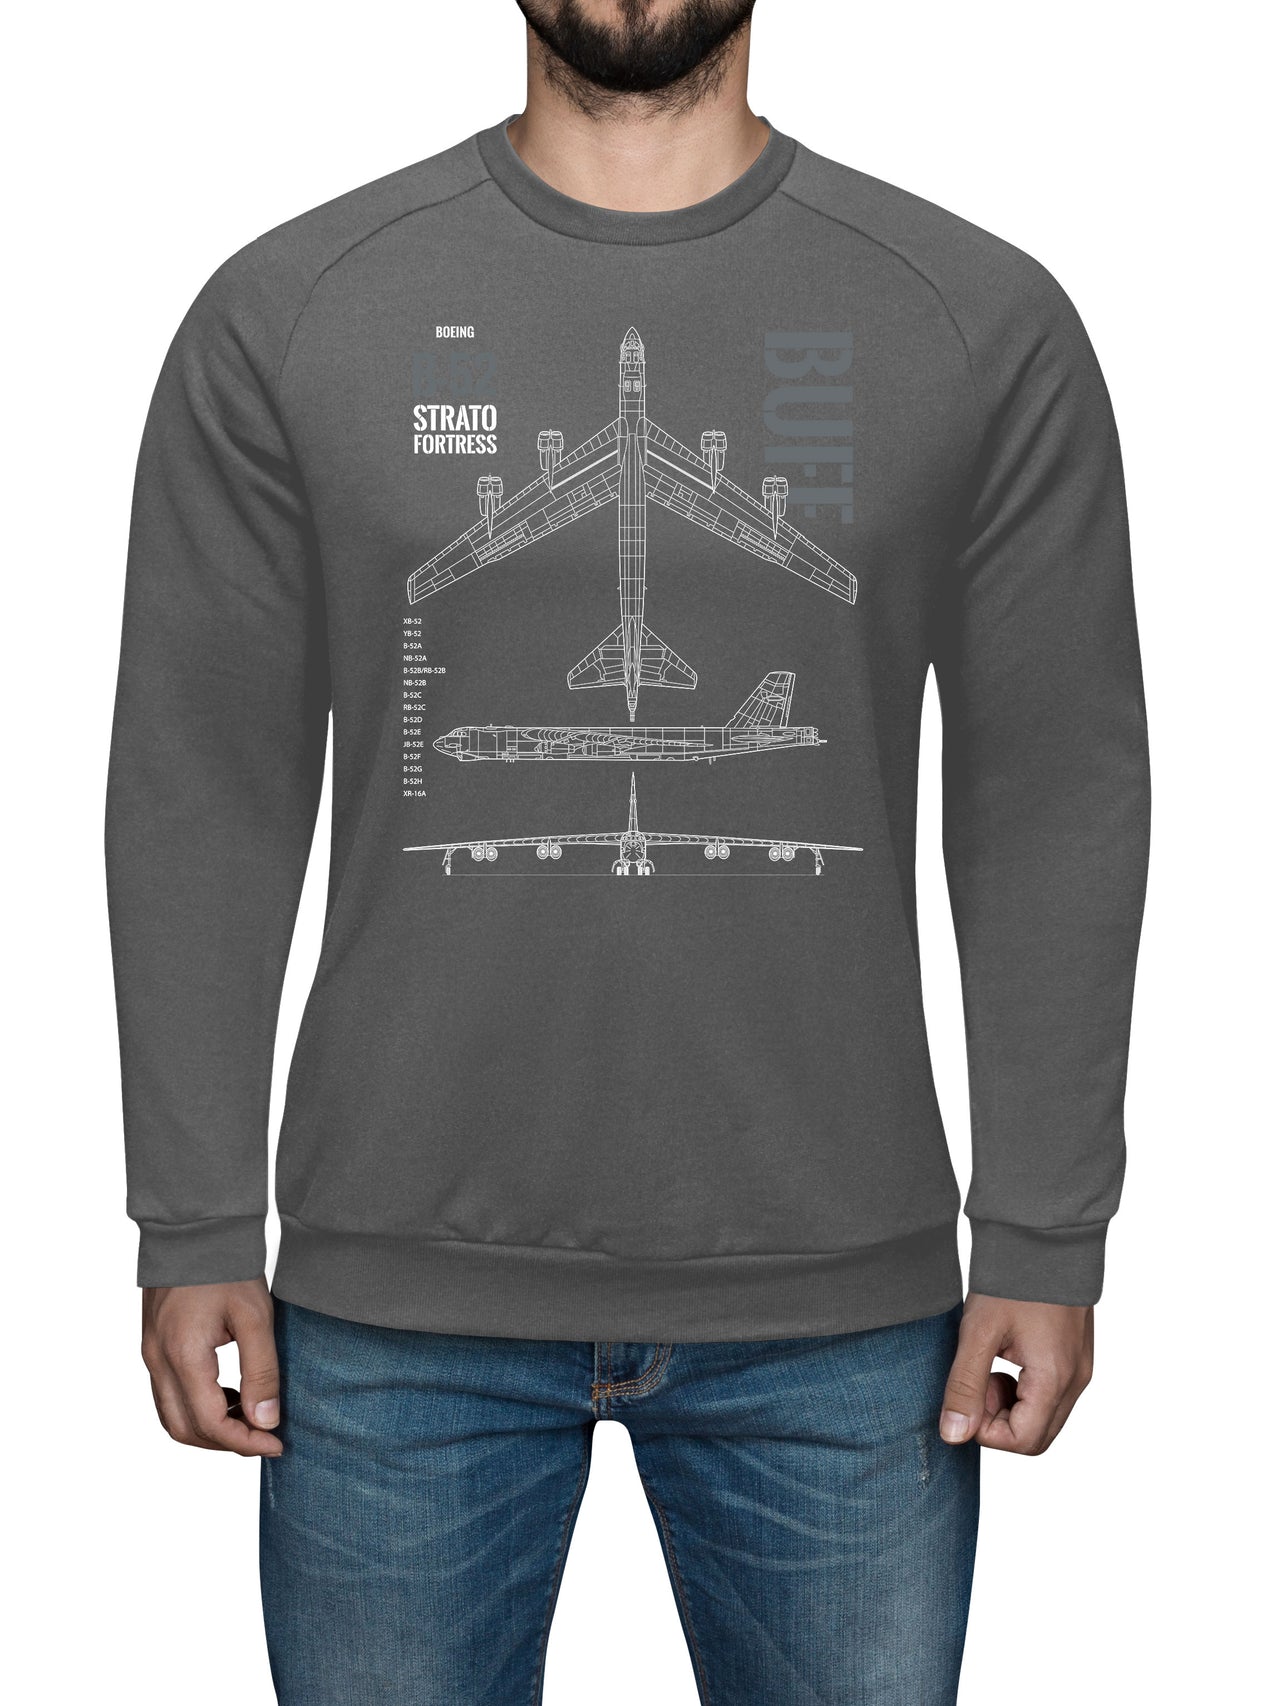 B-52 Stratofortress - Sweat Shirt